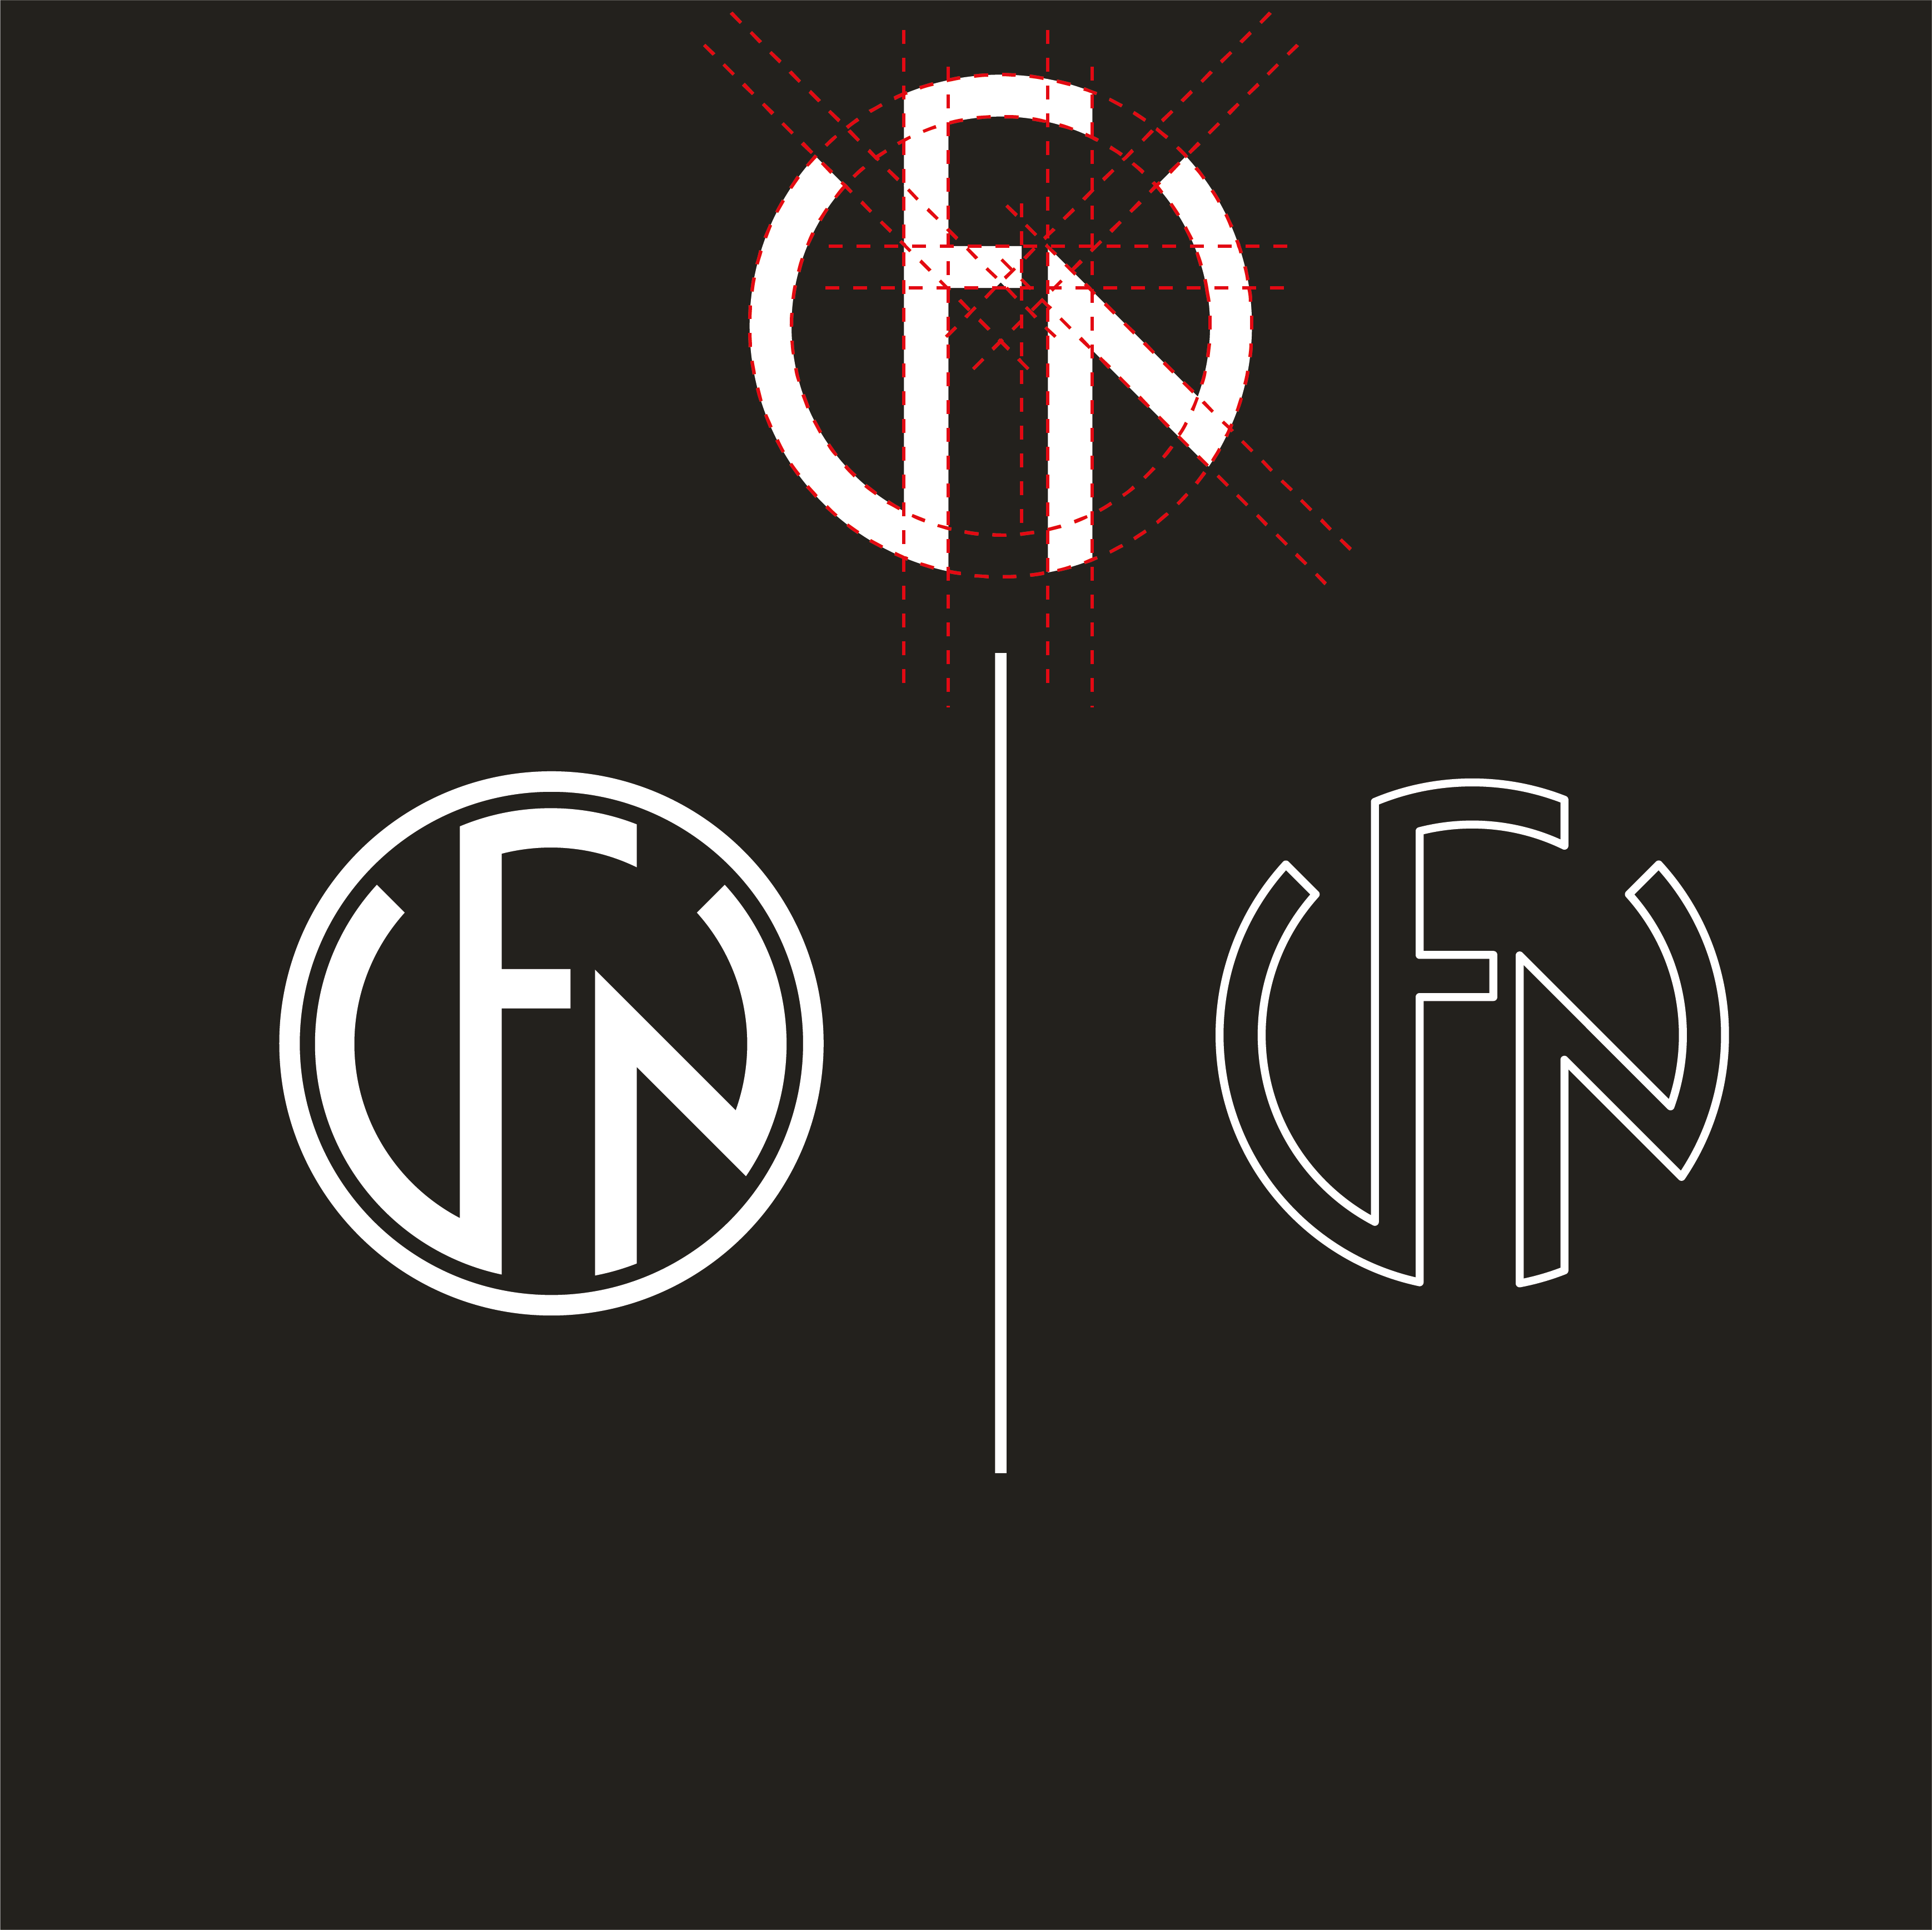 FNH Logo - FN LOGO #logo #logos #twinelogos #logodesigns #logodesigner ...